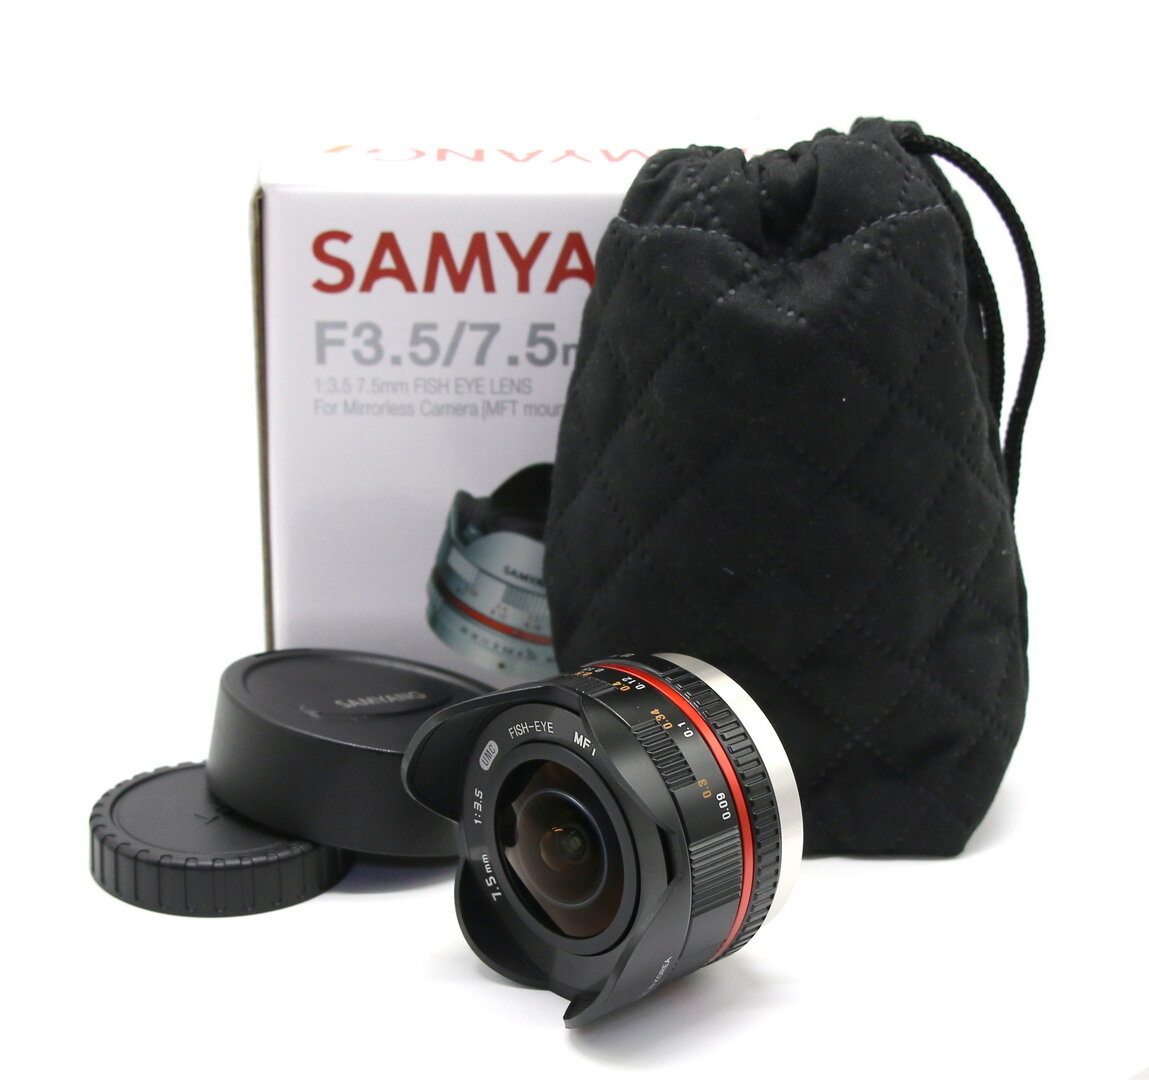 Samyang 7.5mm f/3.5 UMC Fish-Eye в упаковке